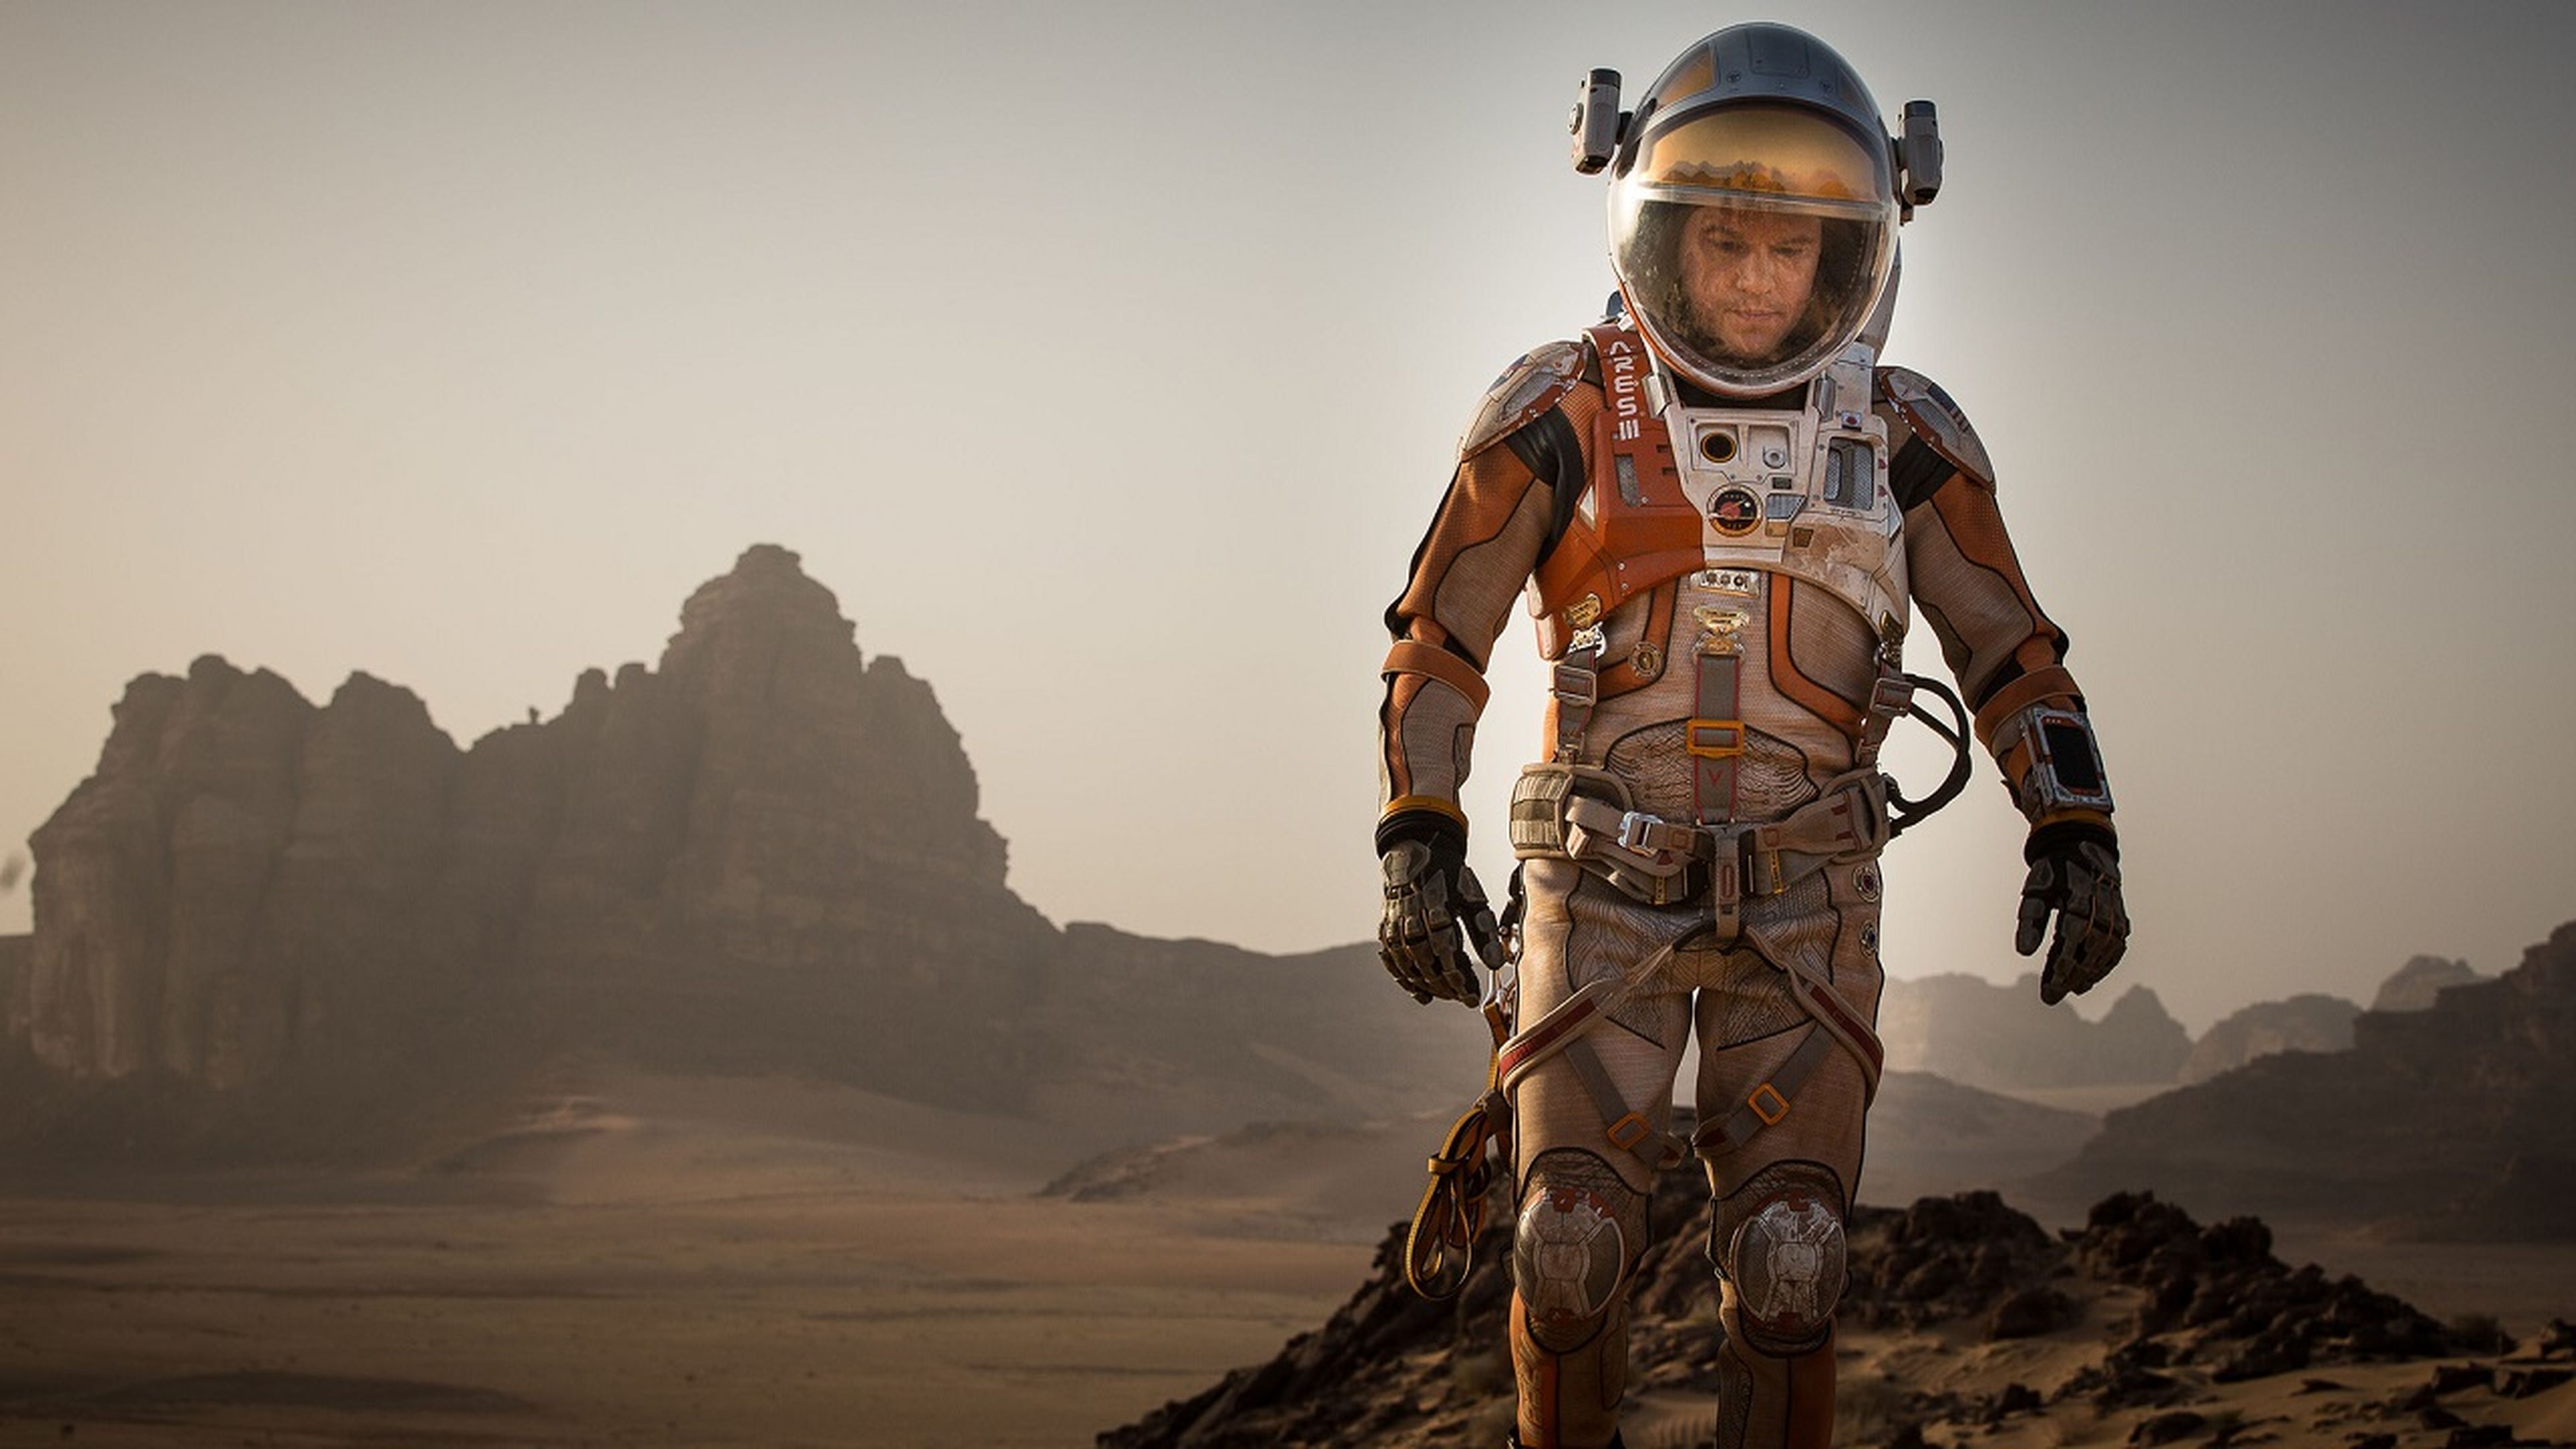 Cine marciano: estas son las 5 mejores películas ambientadas en Marte de todos los tiempos